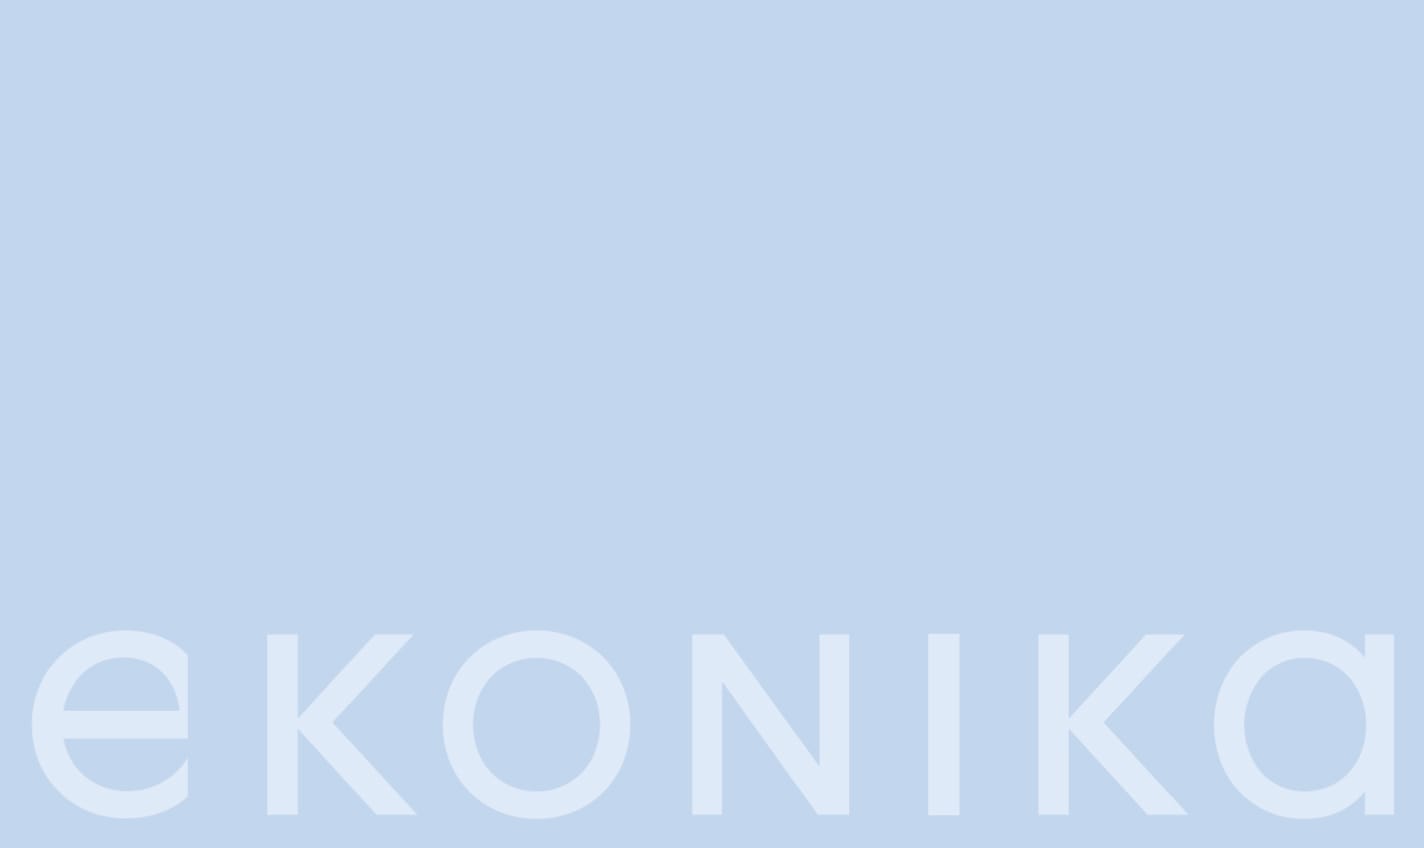 Бренд EKONIKA обновляет логотип и готовит к открытию флагманский магазин